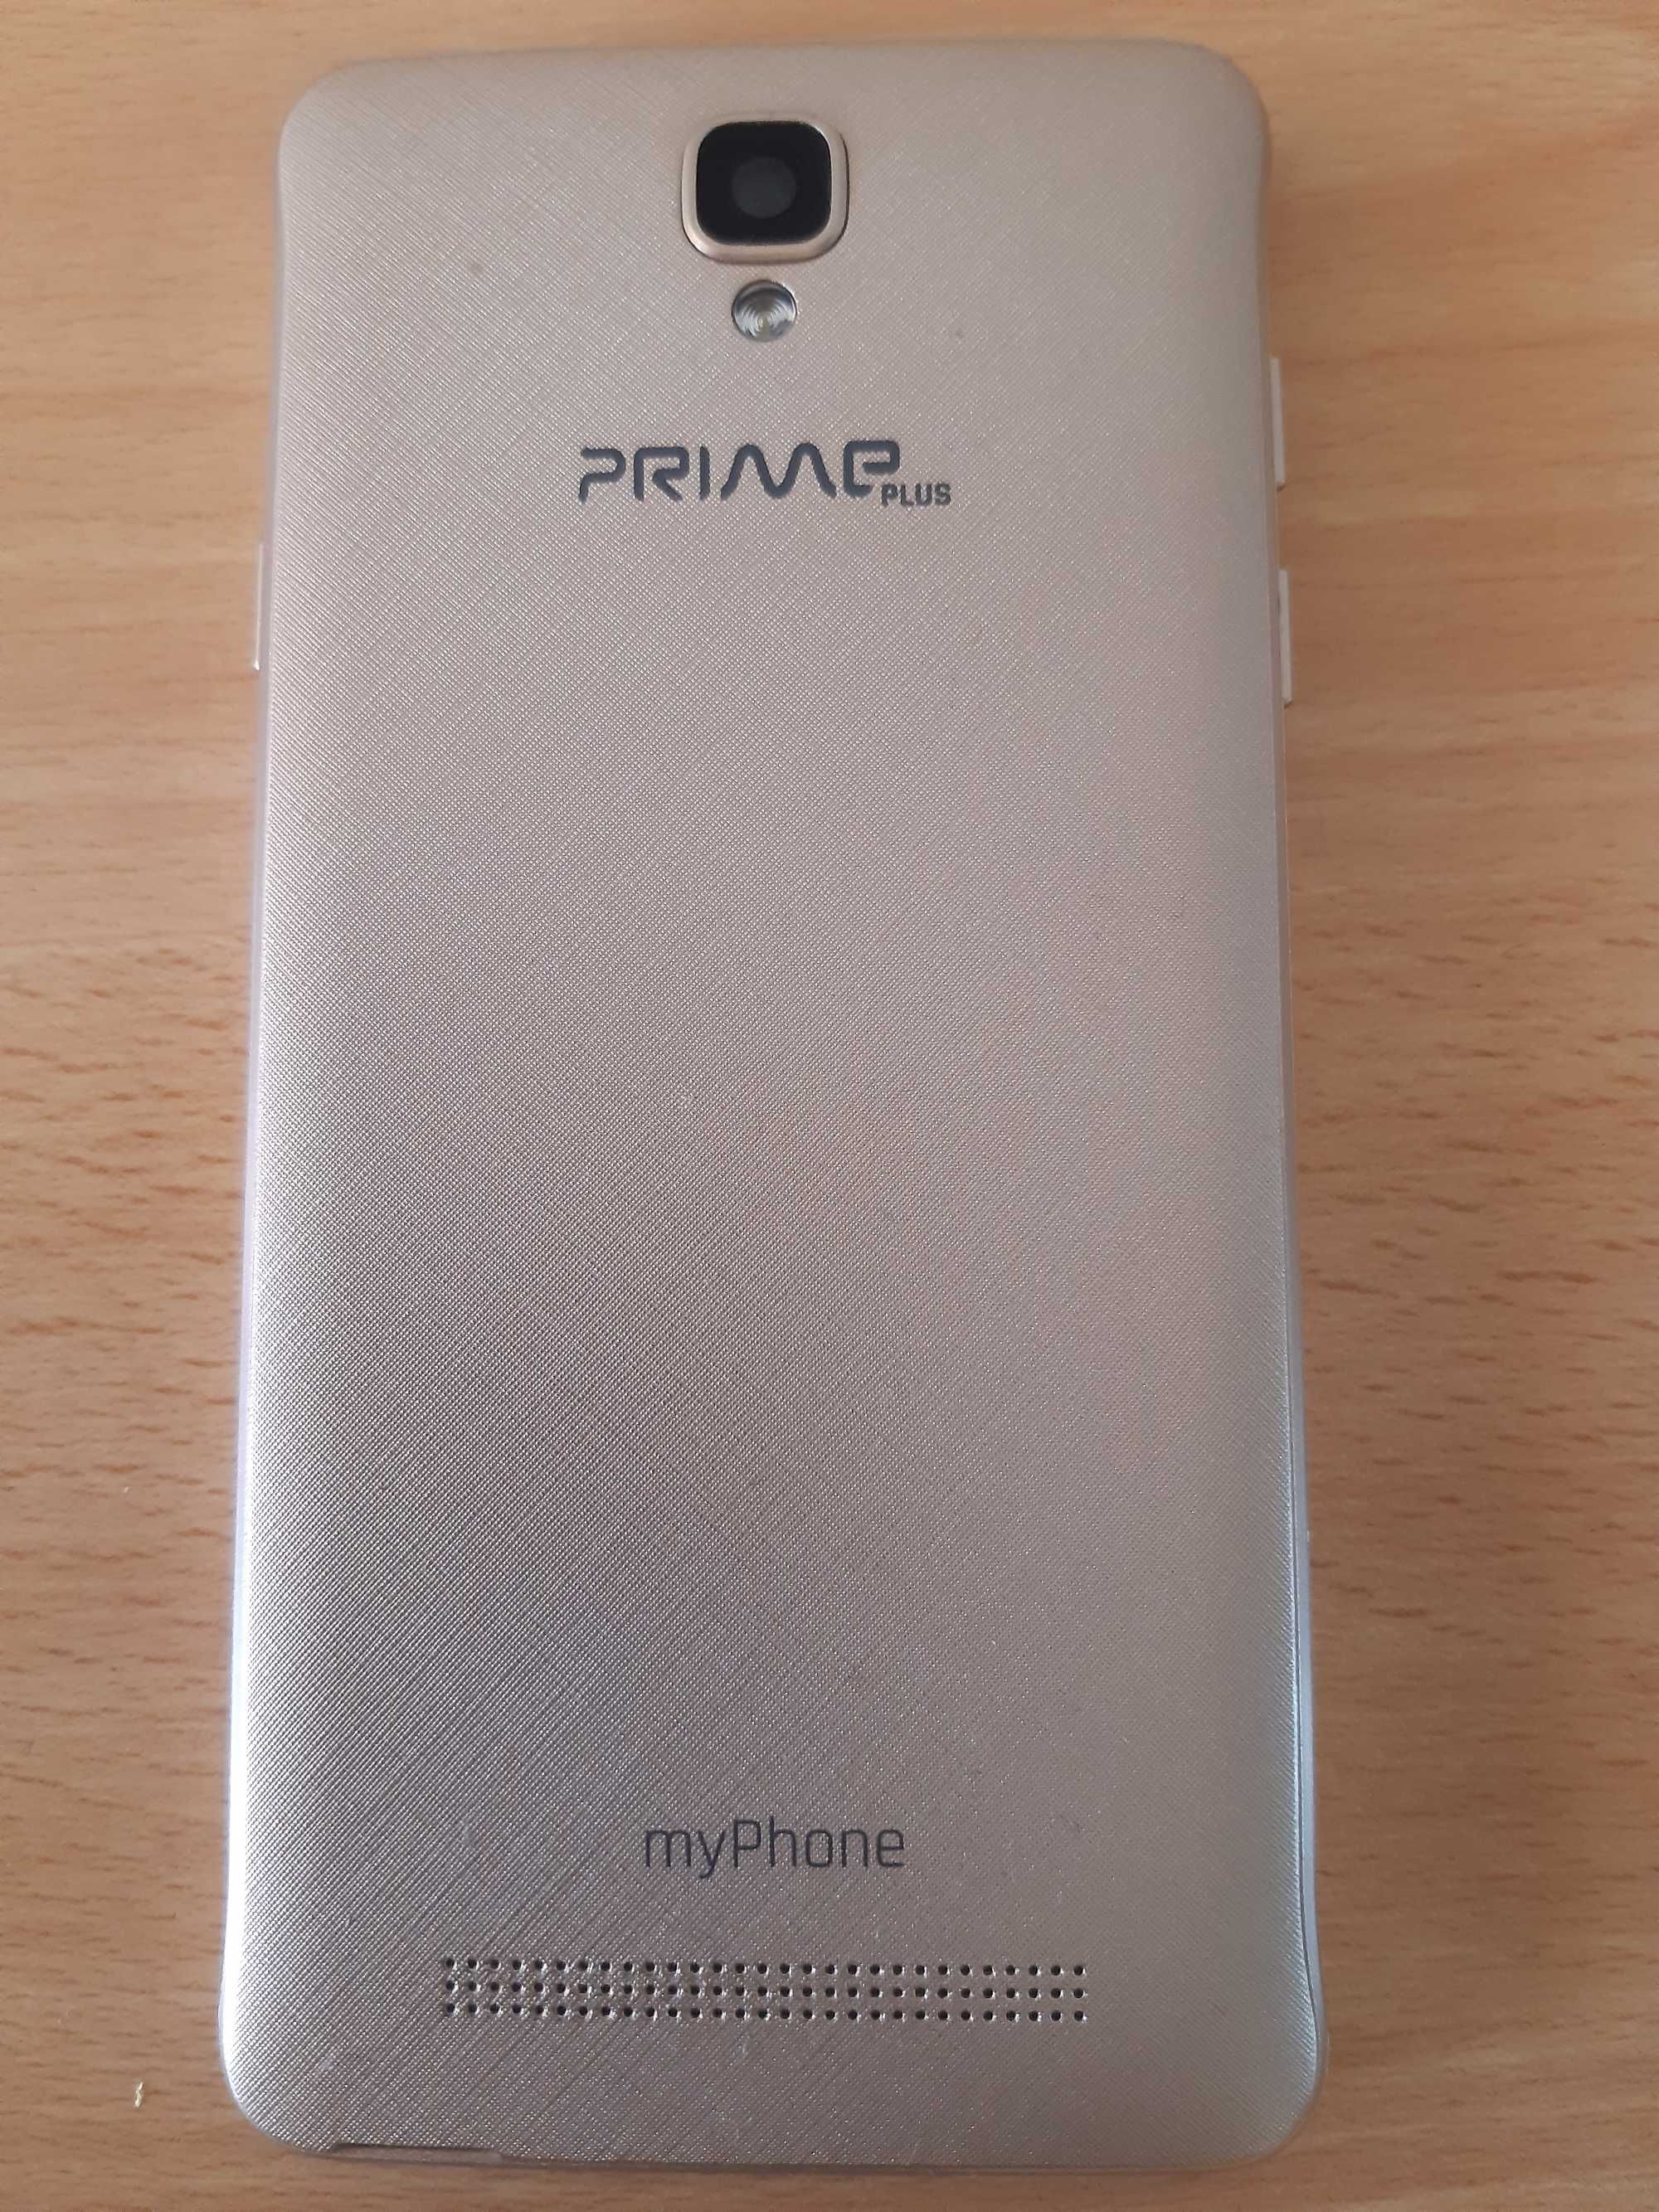 smartfon myPhone Prime Plus Dual SIM, złoty, 16GB